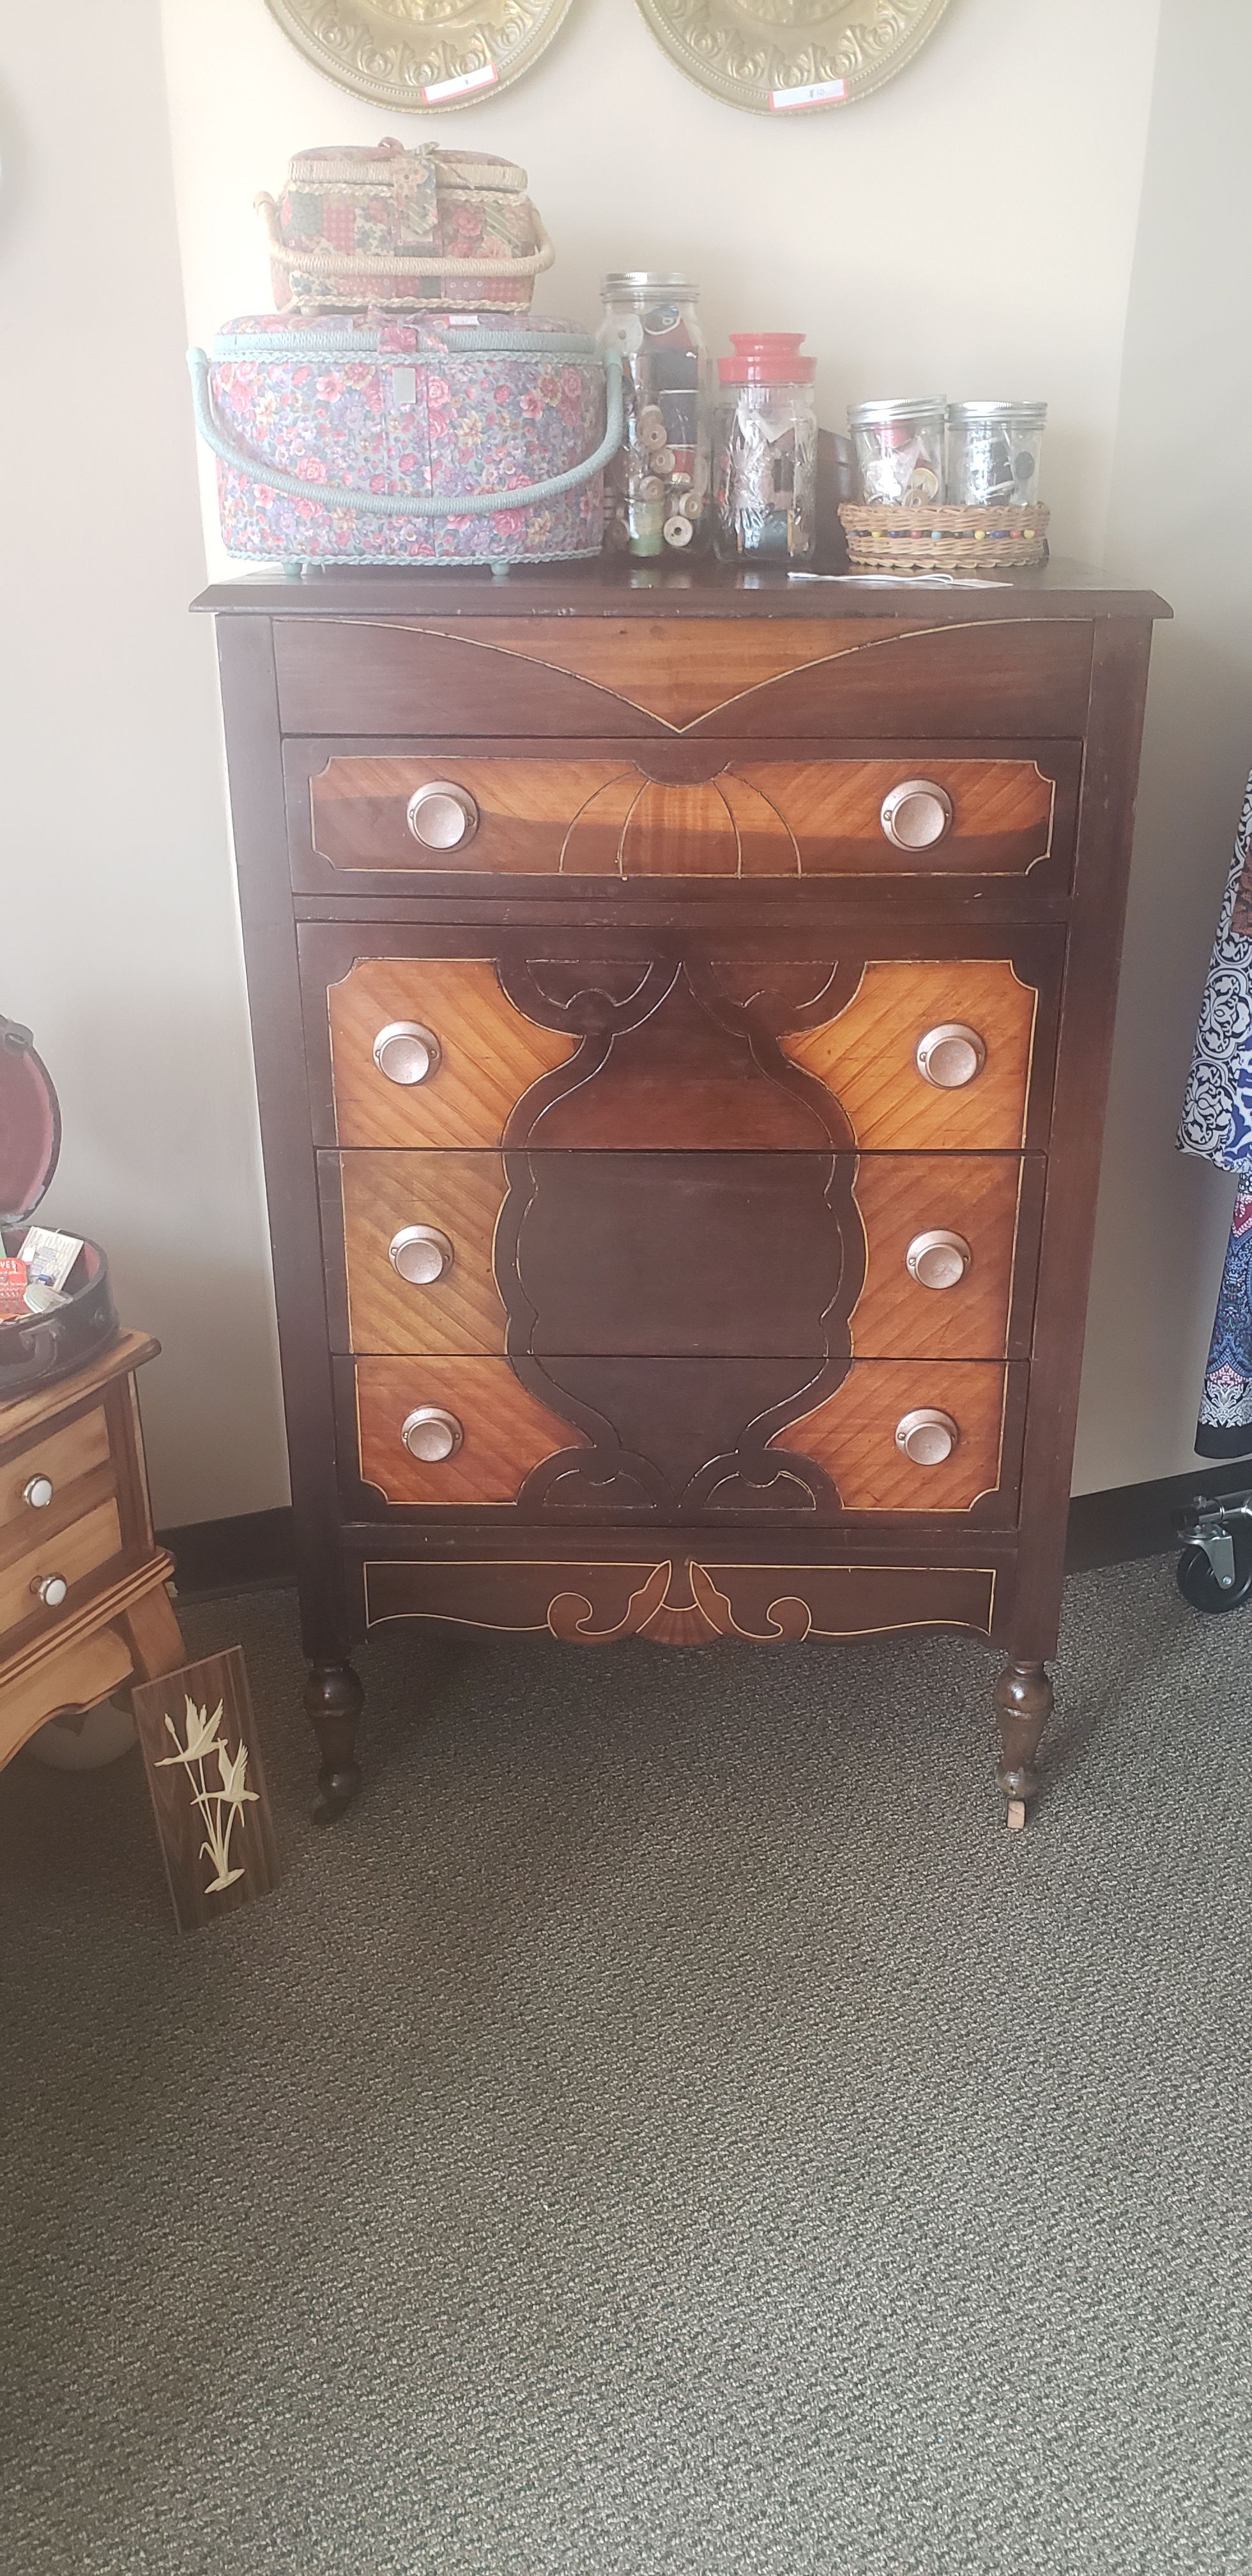 Antique dresser with castors